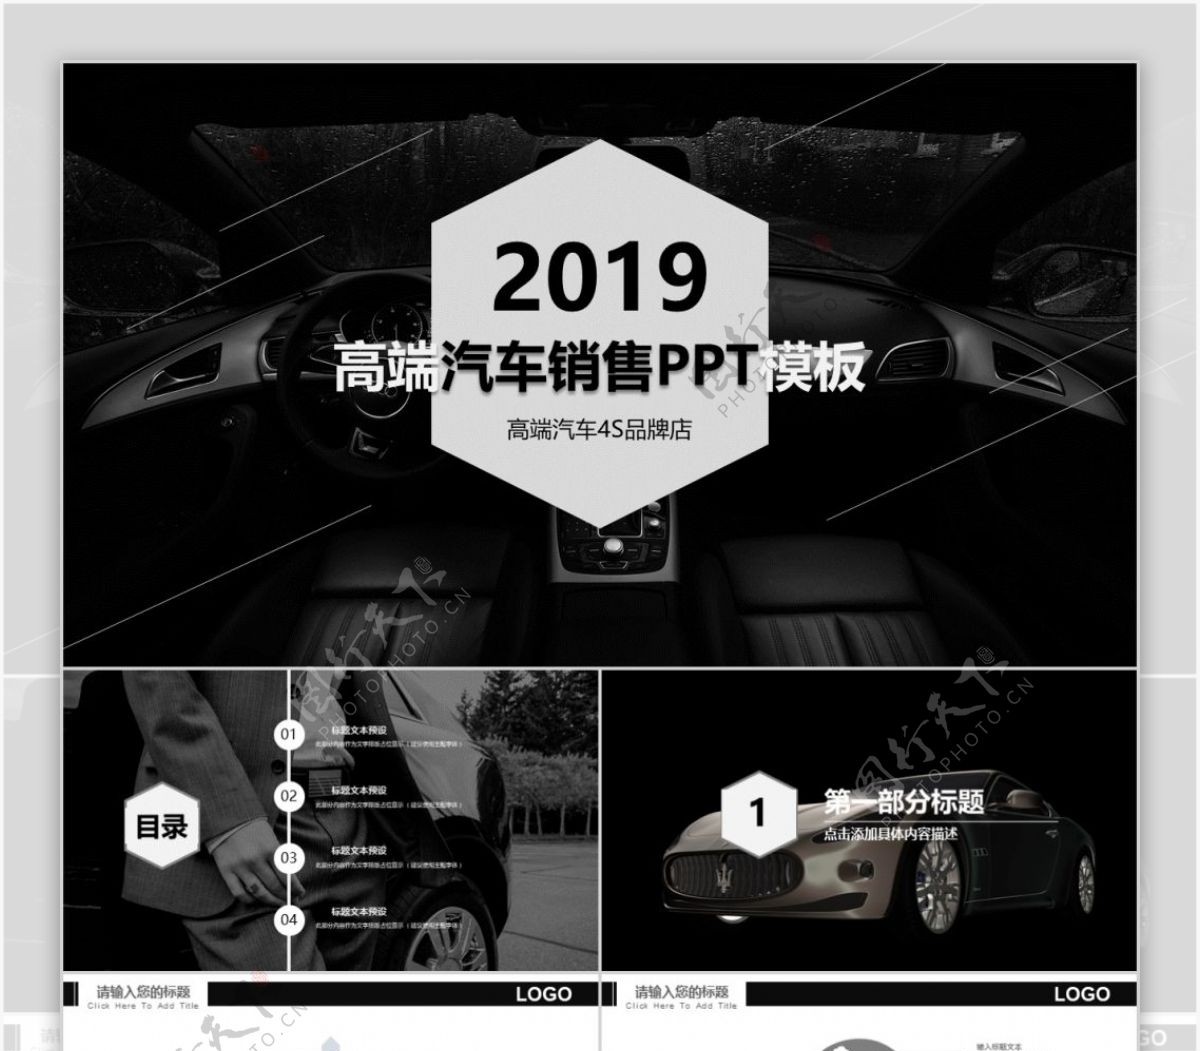 欧美风汽车品牌宣传4S店宣传PPT模板